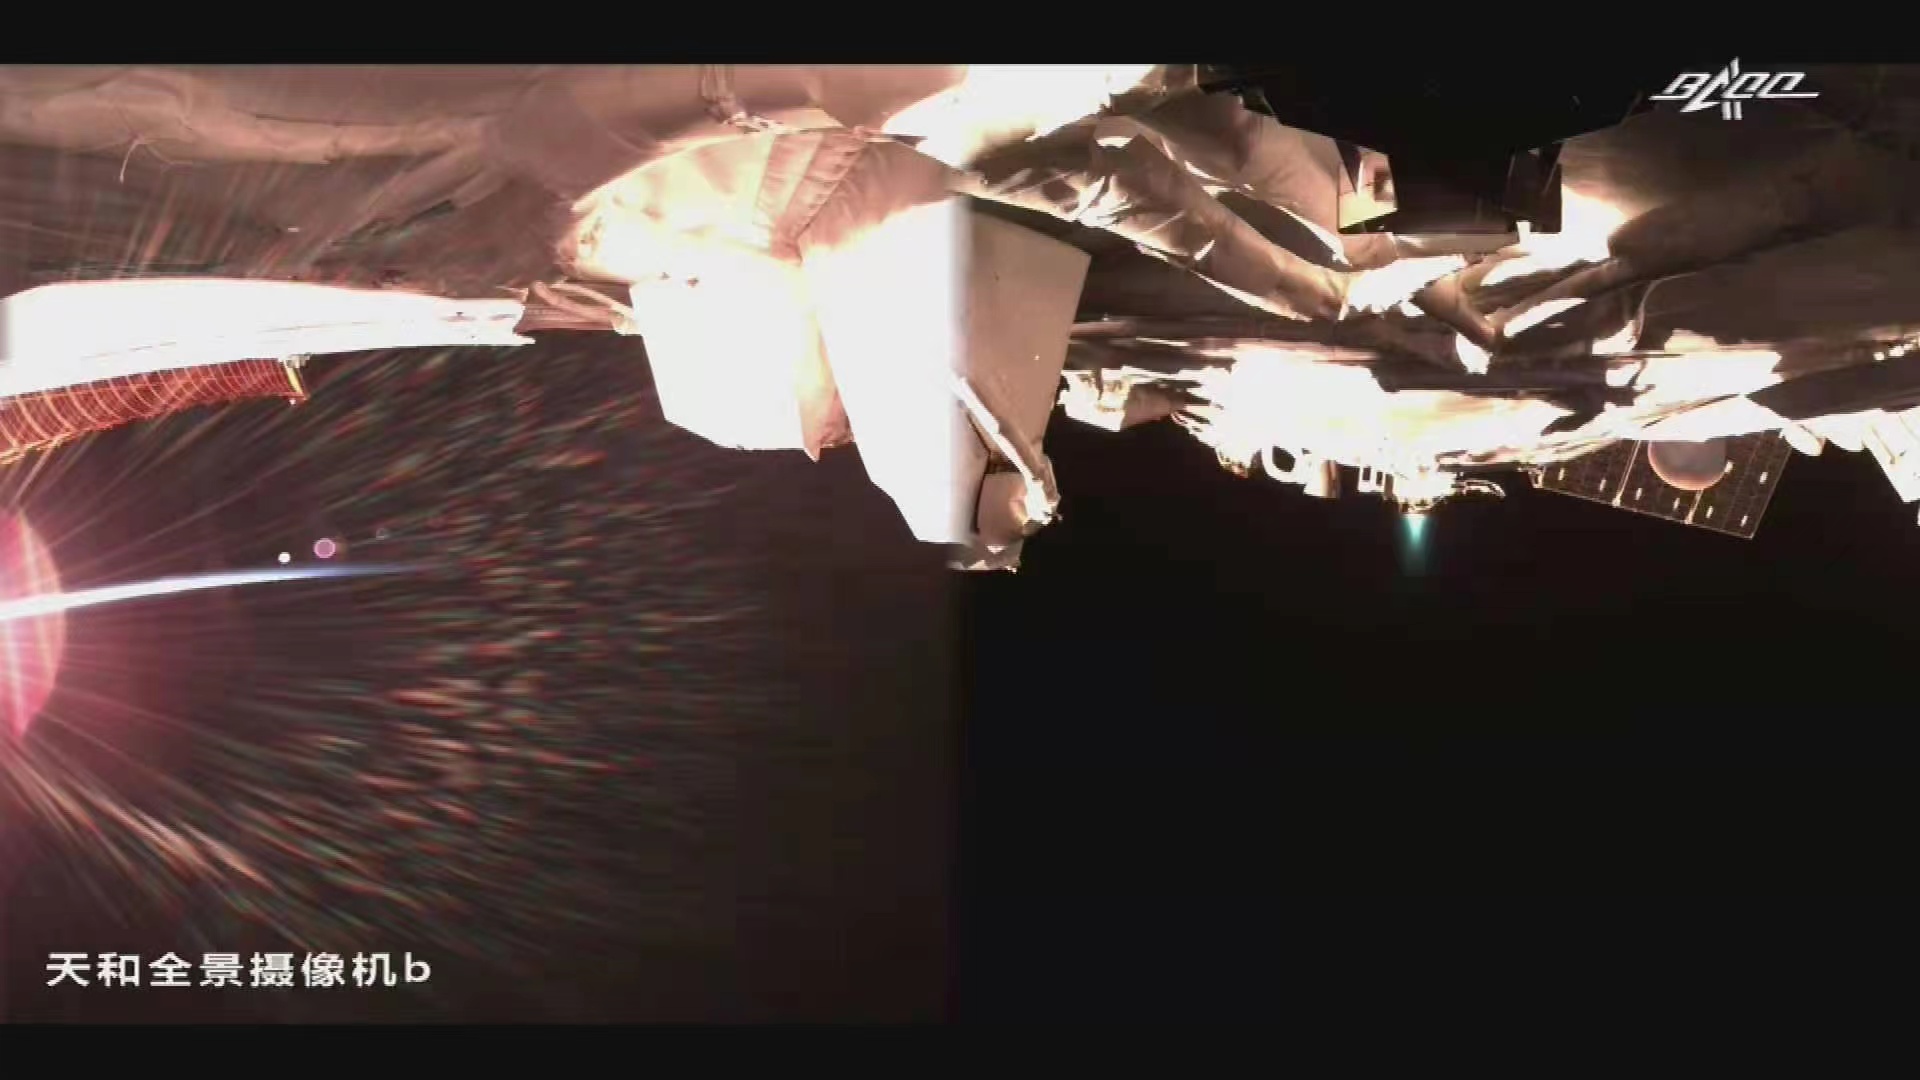 宇宙ステーション電気推進システムの点火した状態（「天和」コアモジュール船外パノラマカメラによる撮影）。